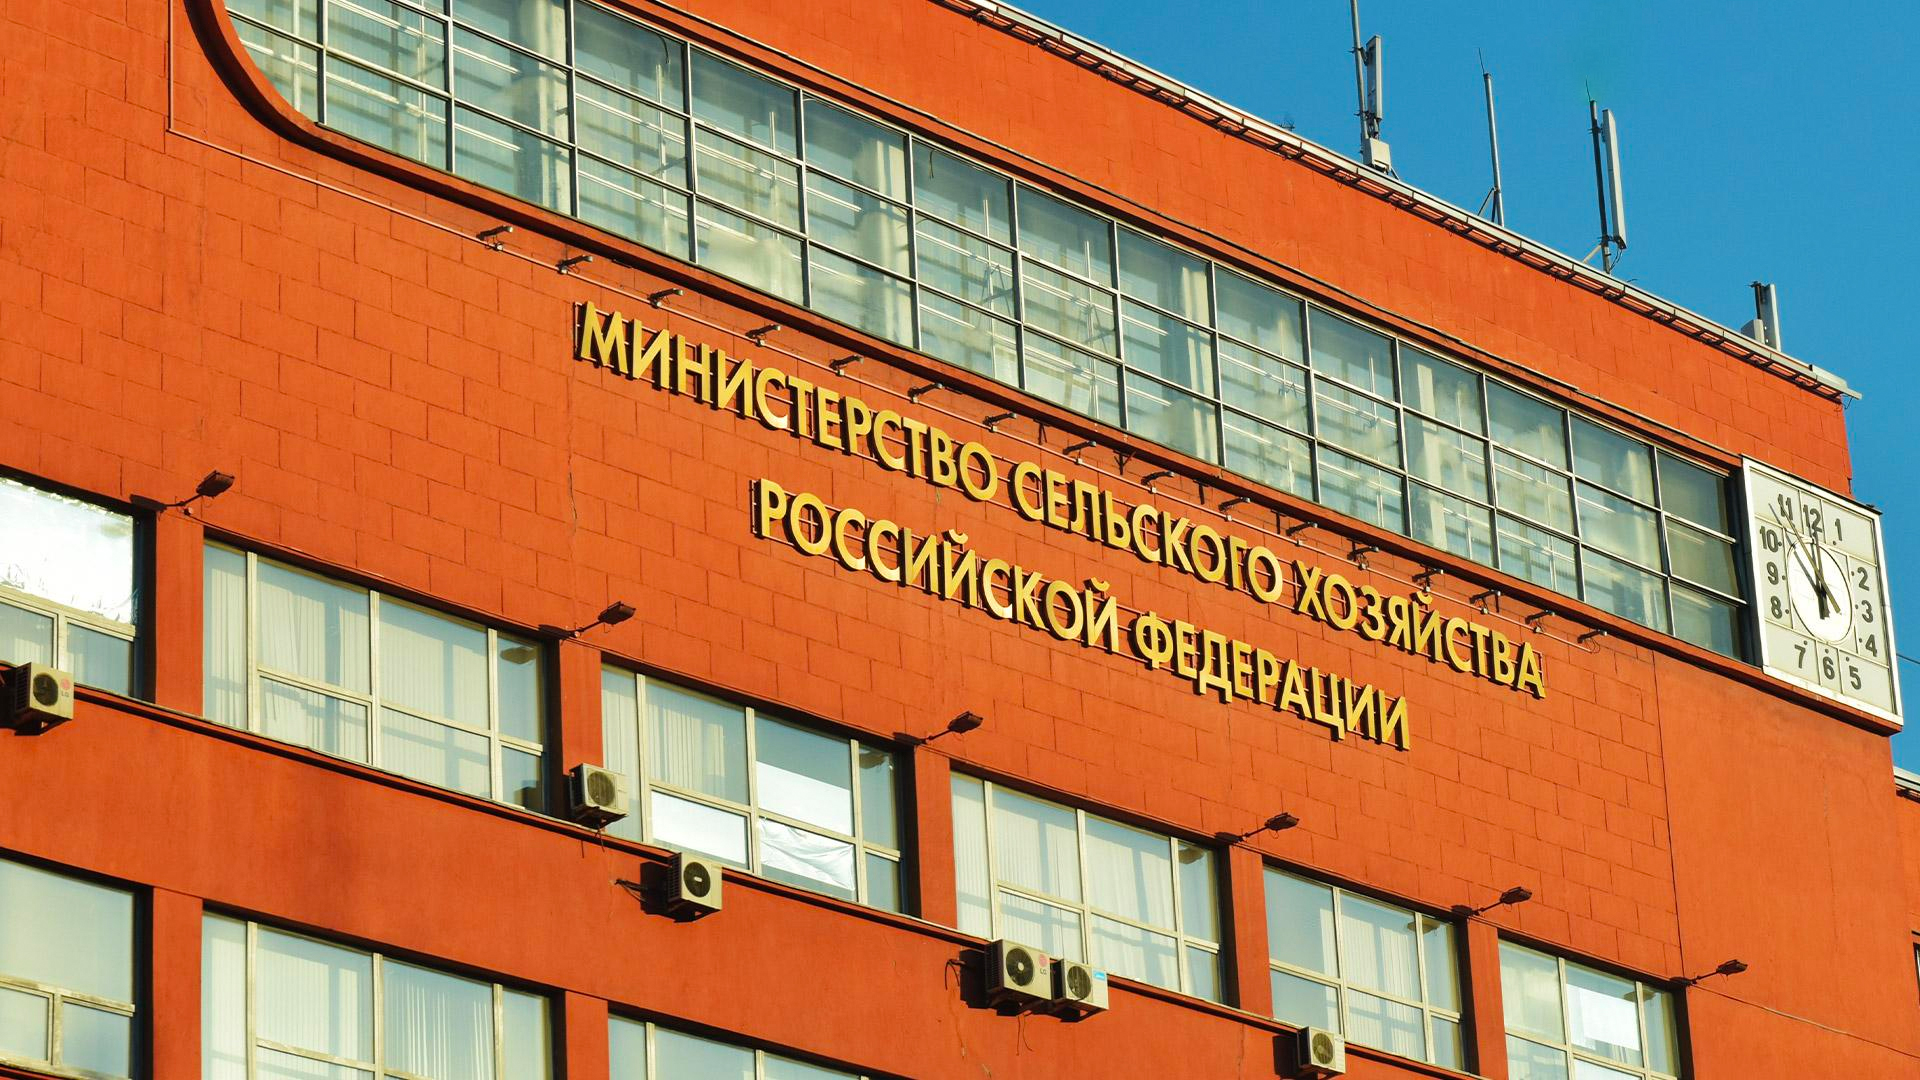 Здание Министерство сельского хозяйства Российской Федерации (Минсельхоз России)